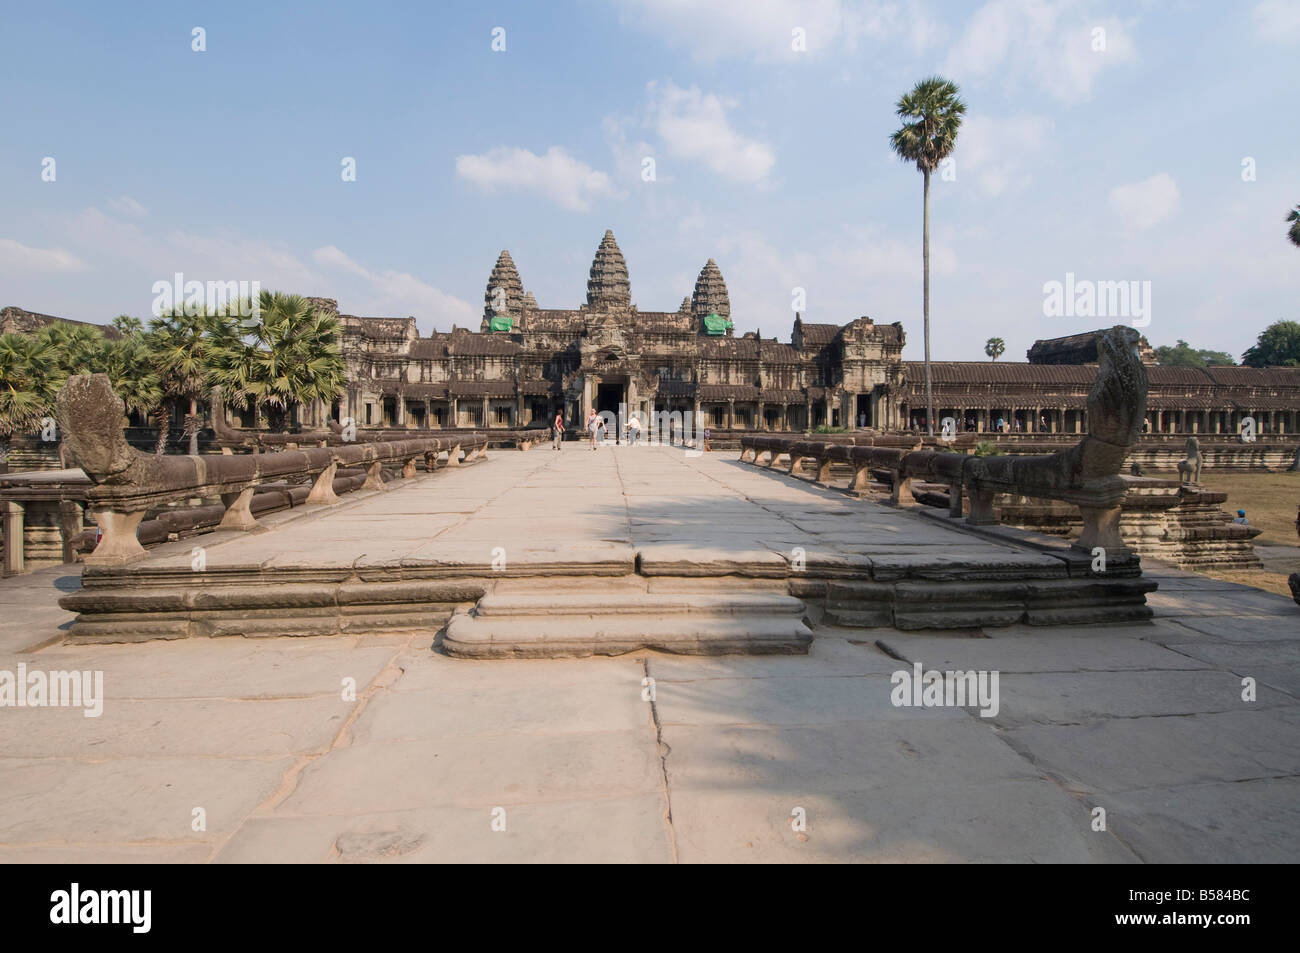 Angkor Wat temple, 12e siècle, le Khmer, Angkor, Site du patrimoine mondial de l'UNESCO, Siem Reap, Cambodge, Indochine, Asie du Sud-Est, l'Asie Banque D'Images